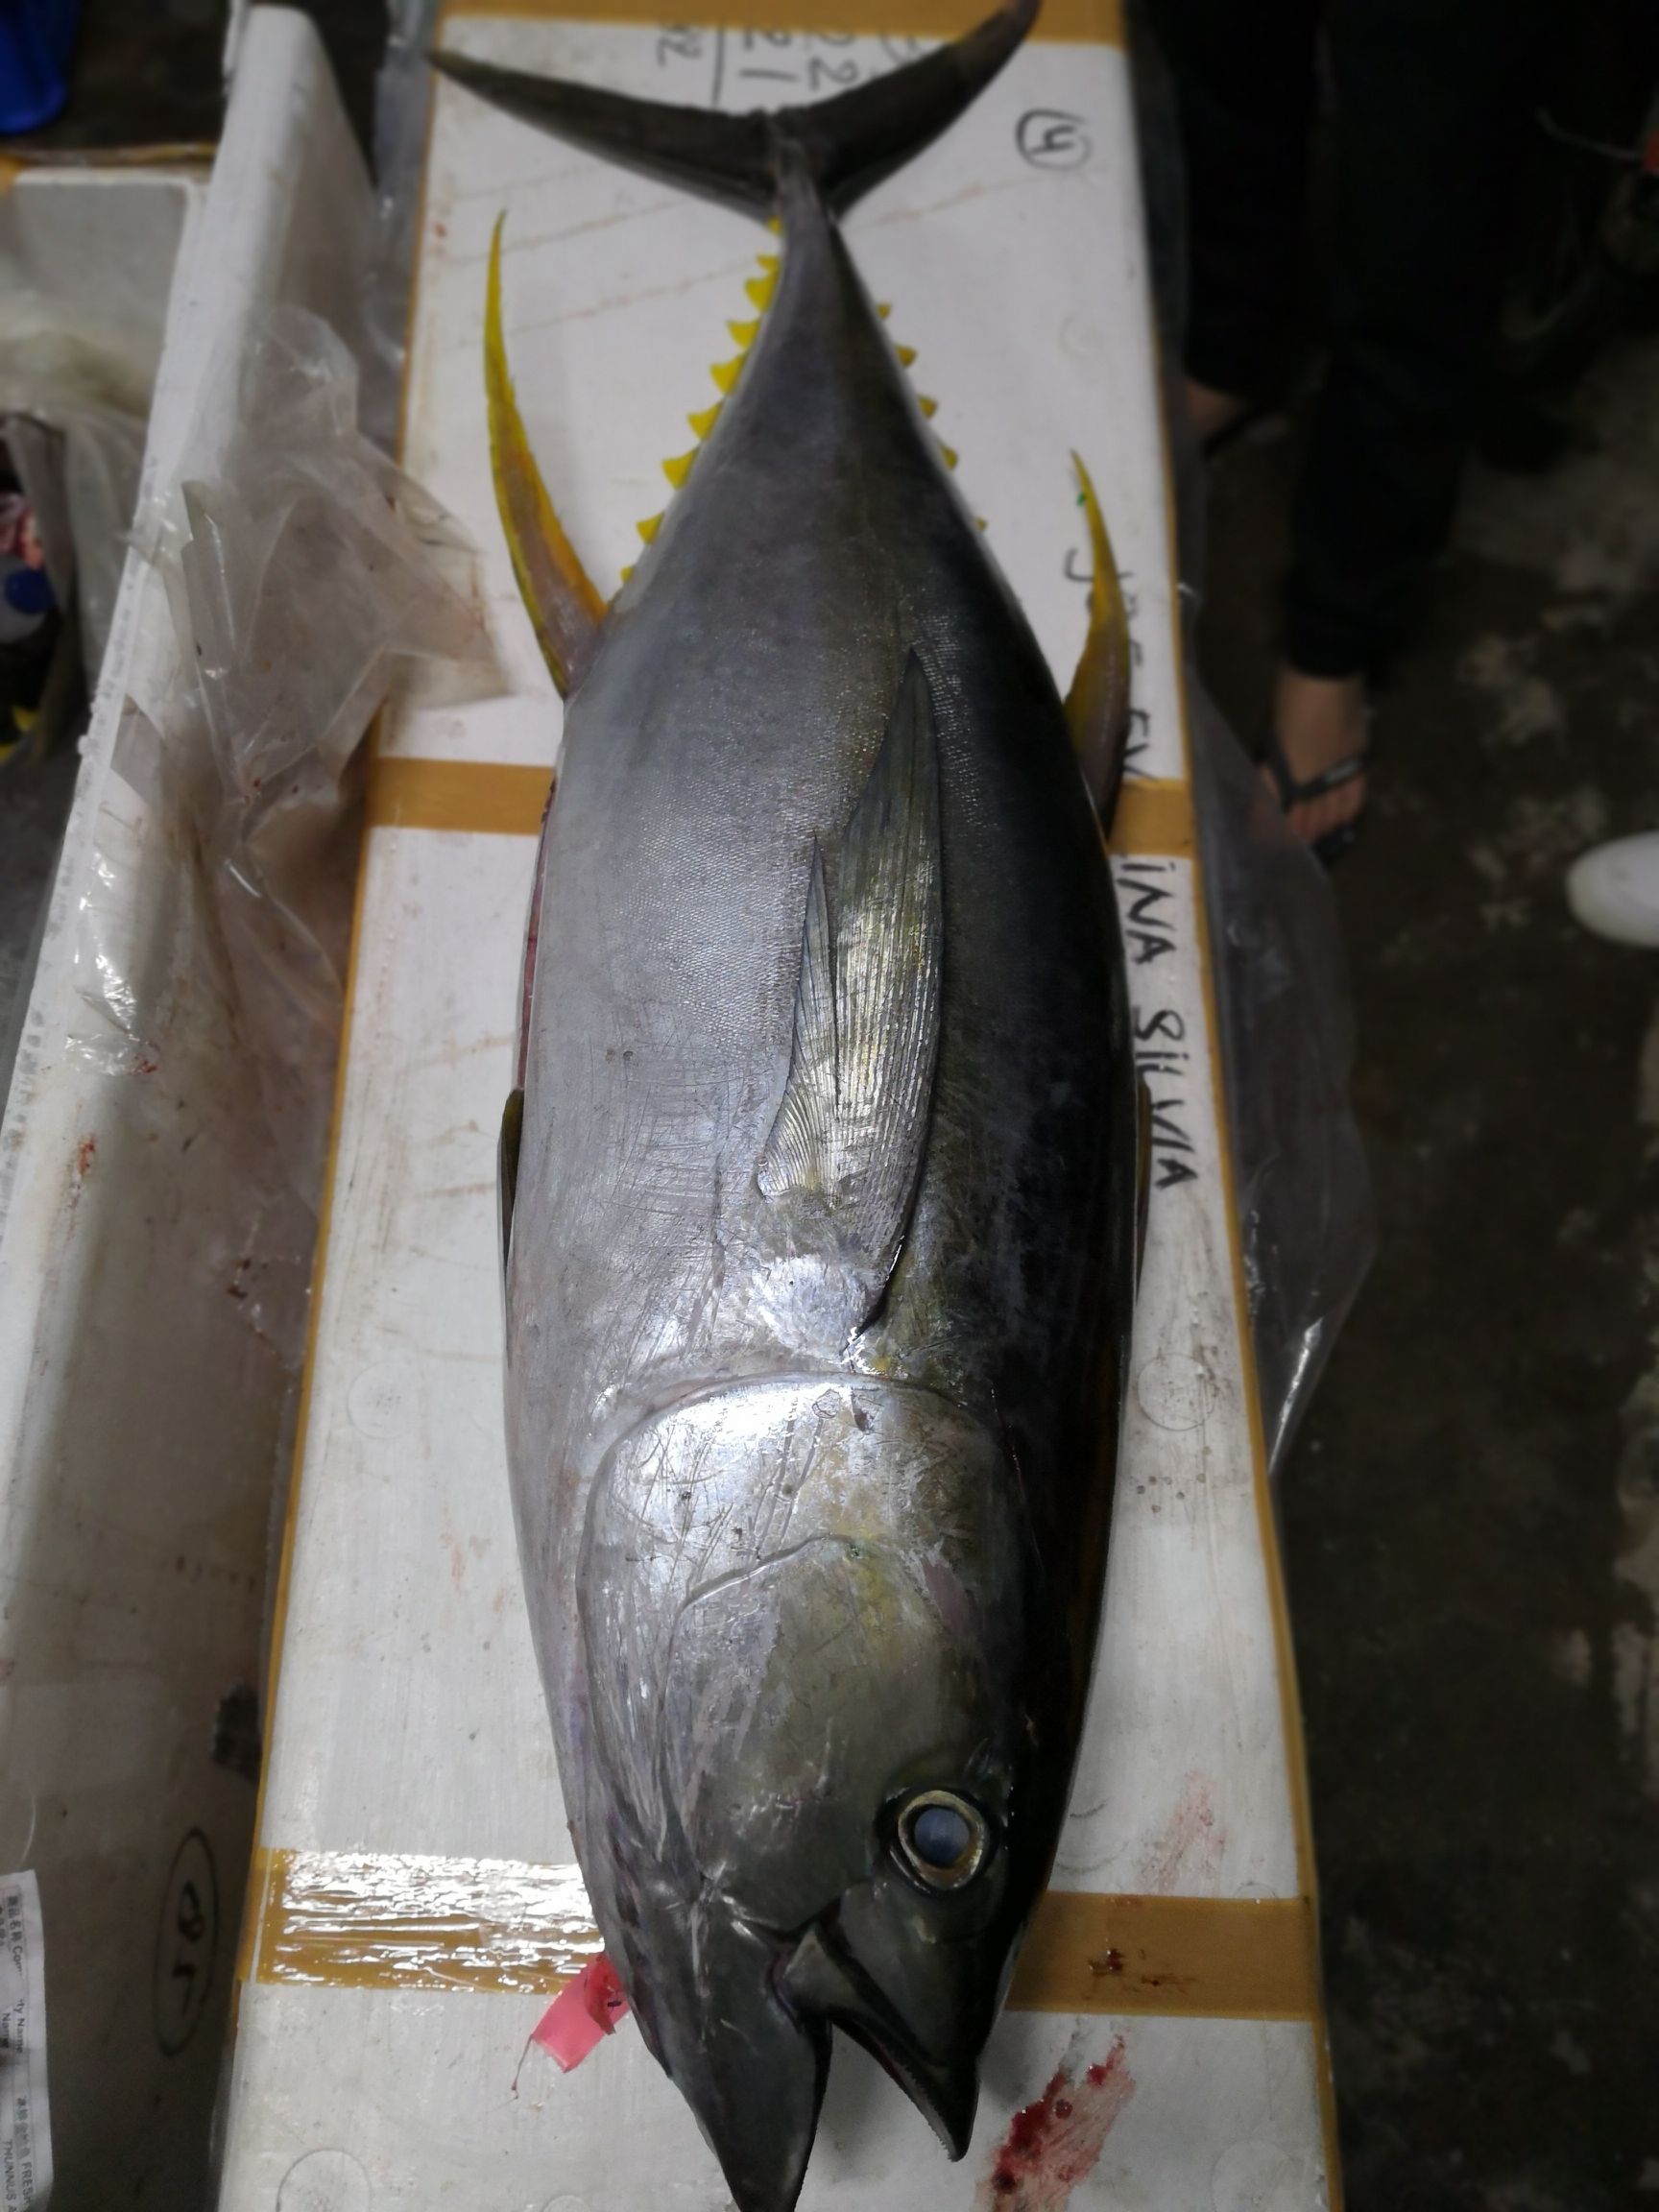 天天印尼空运到广州,印尼冰鲜黄鳍金枪鱼18